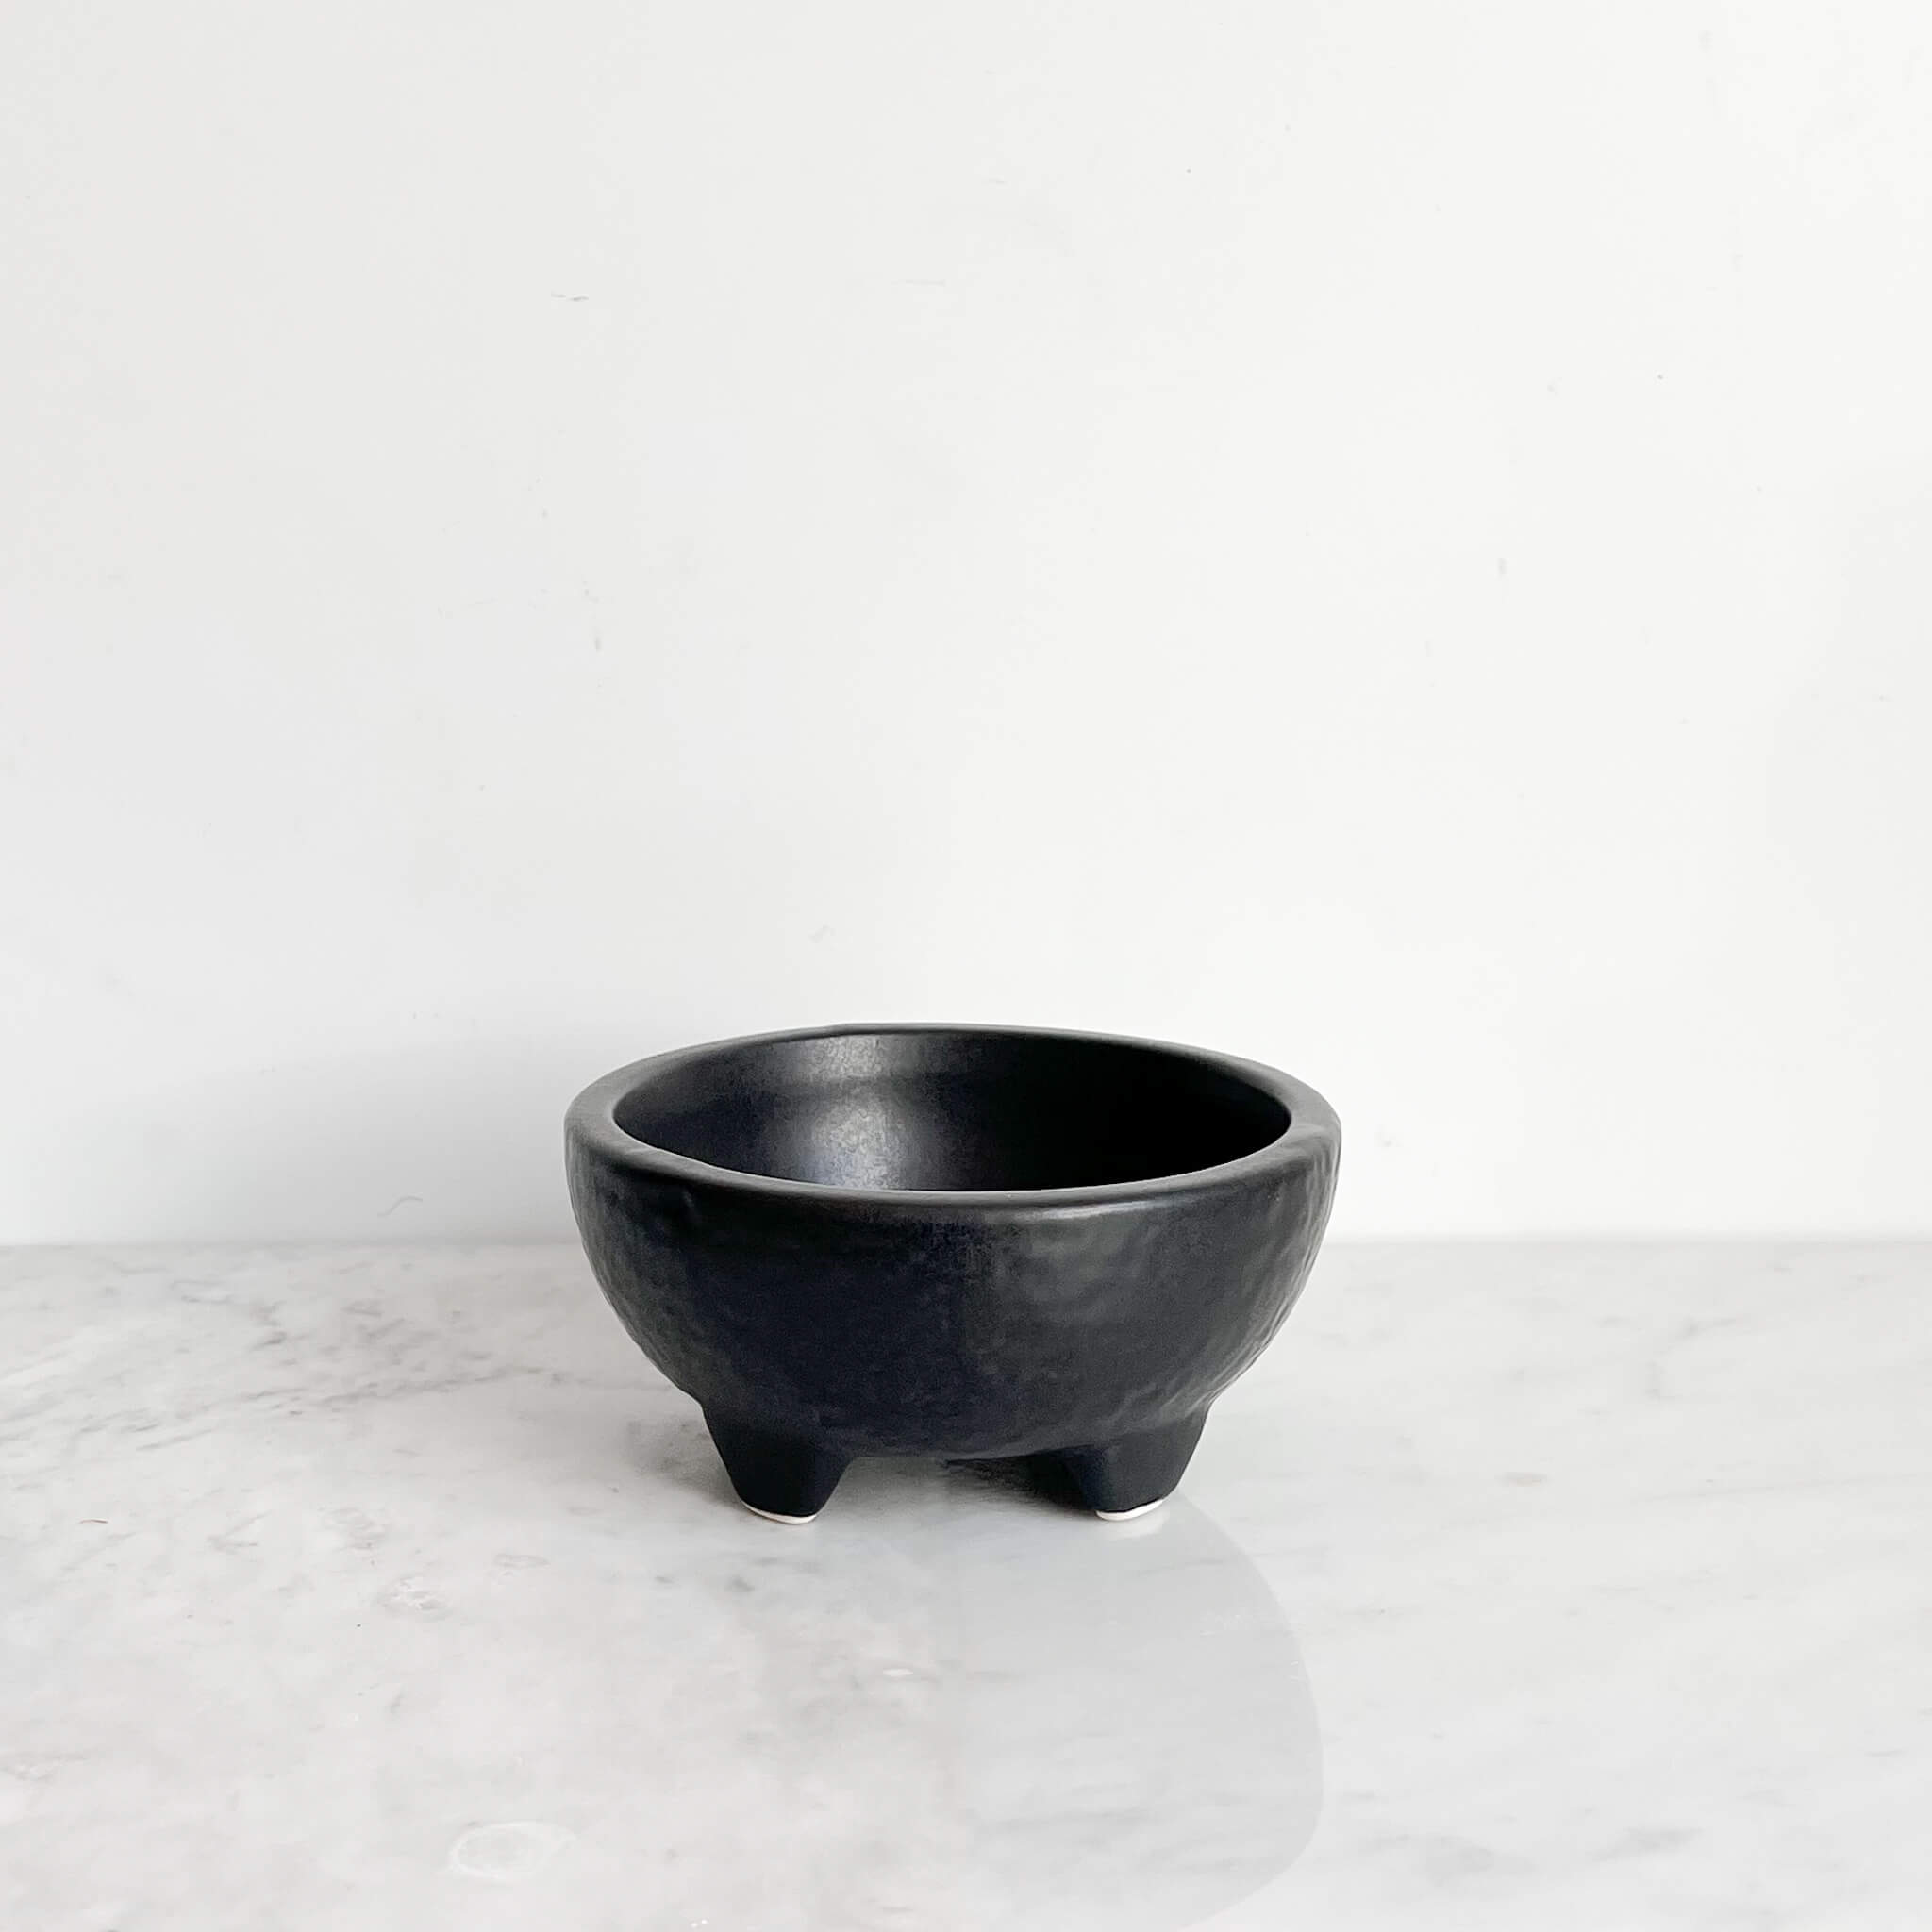 Mini ceramic molcajete bowl in black.